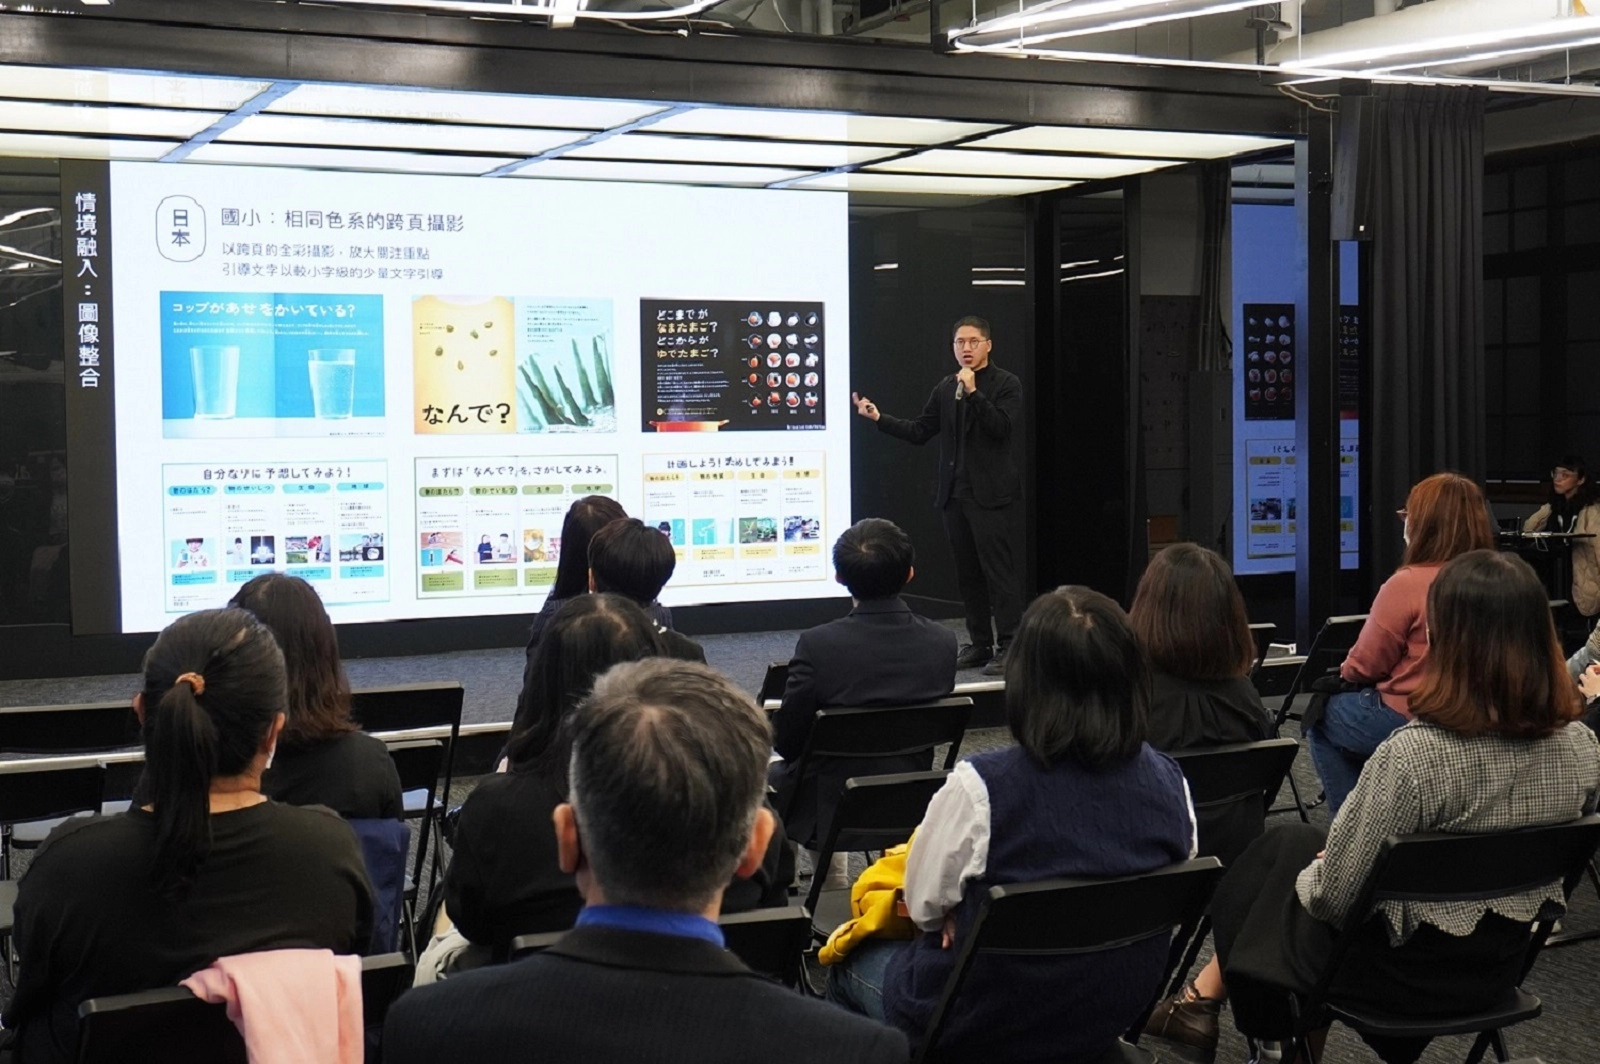 臺北市立大學與美感細胞協會合作，與教科書出版公司美編設計人員探討教科書圖文編排及色彩運用設計。